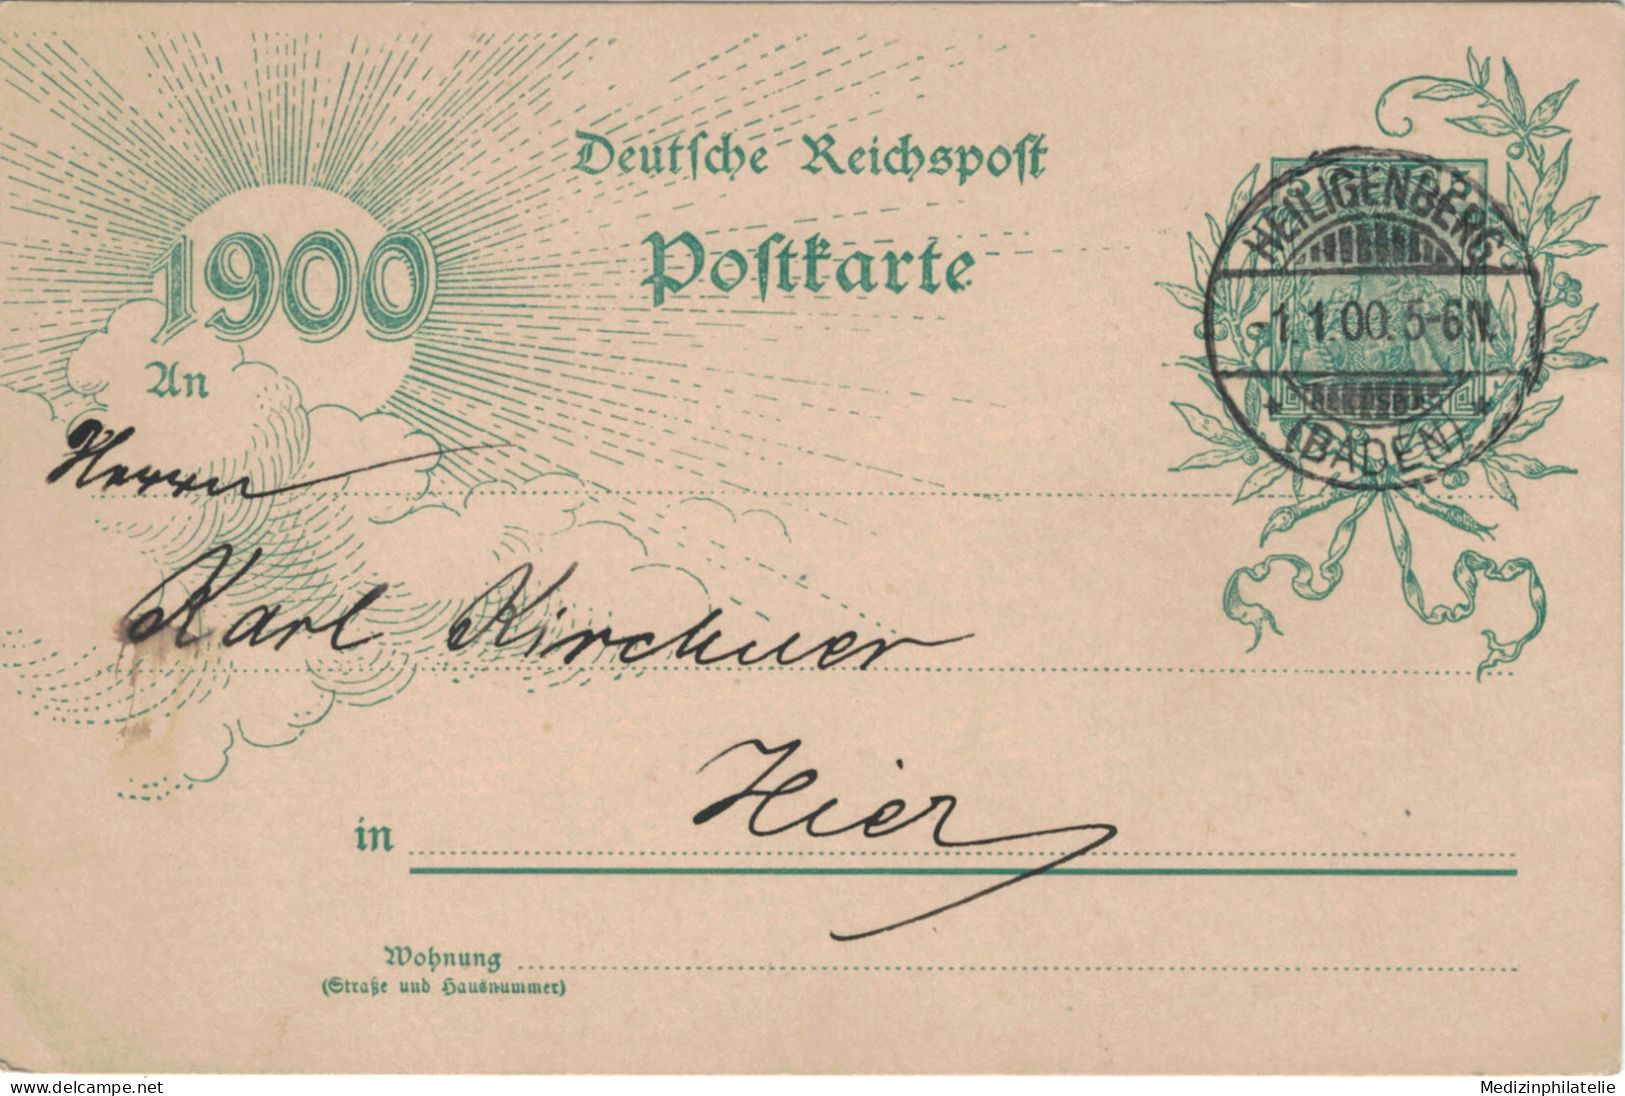 Ganzsache 5 Pfennig Jubiläumskarte 1900 - Ortskarte Heiligenberg 1.1.1900 - Cartoline